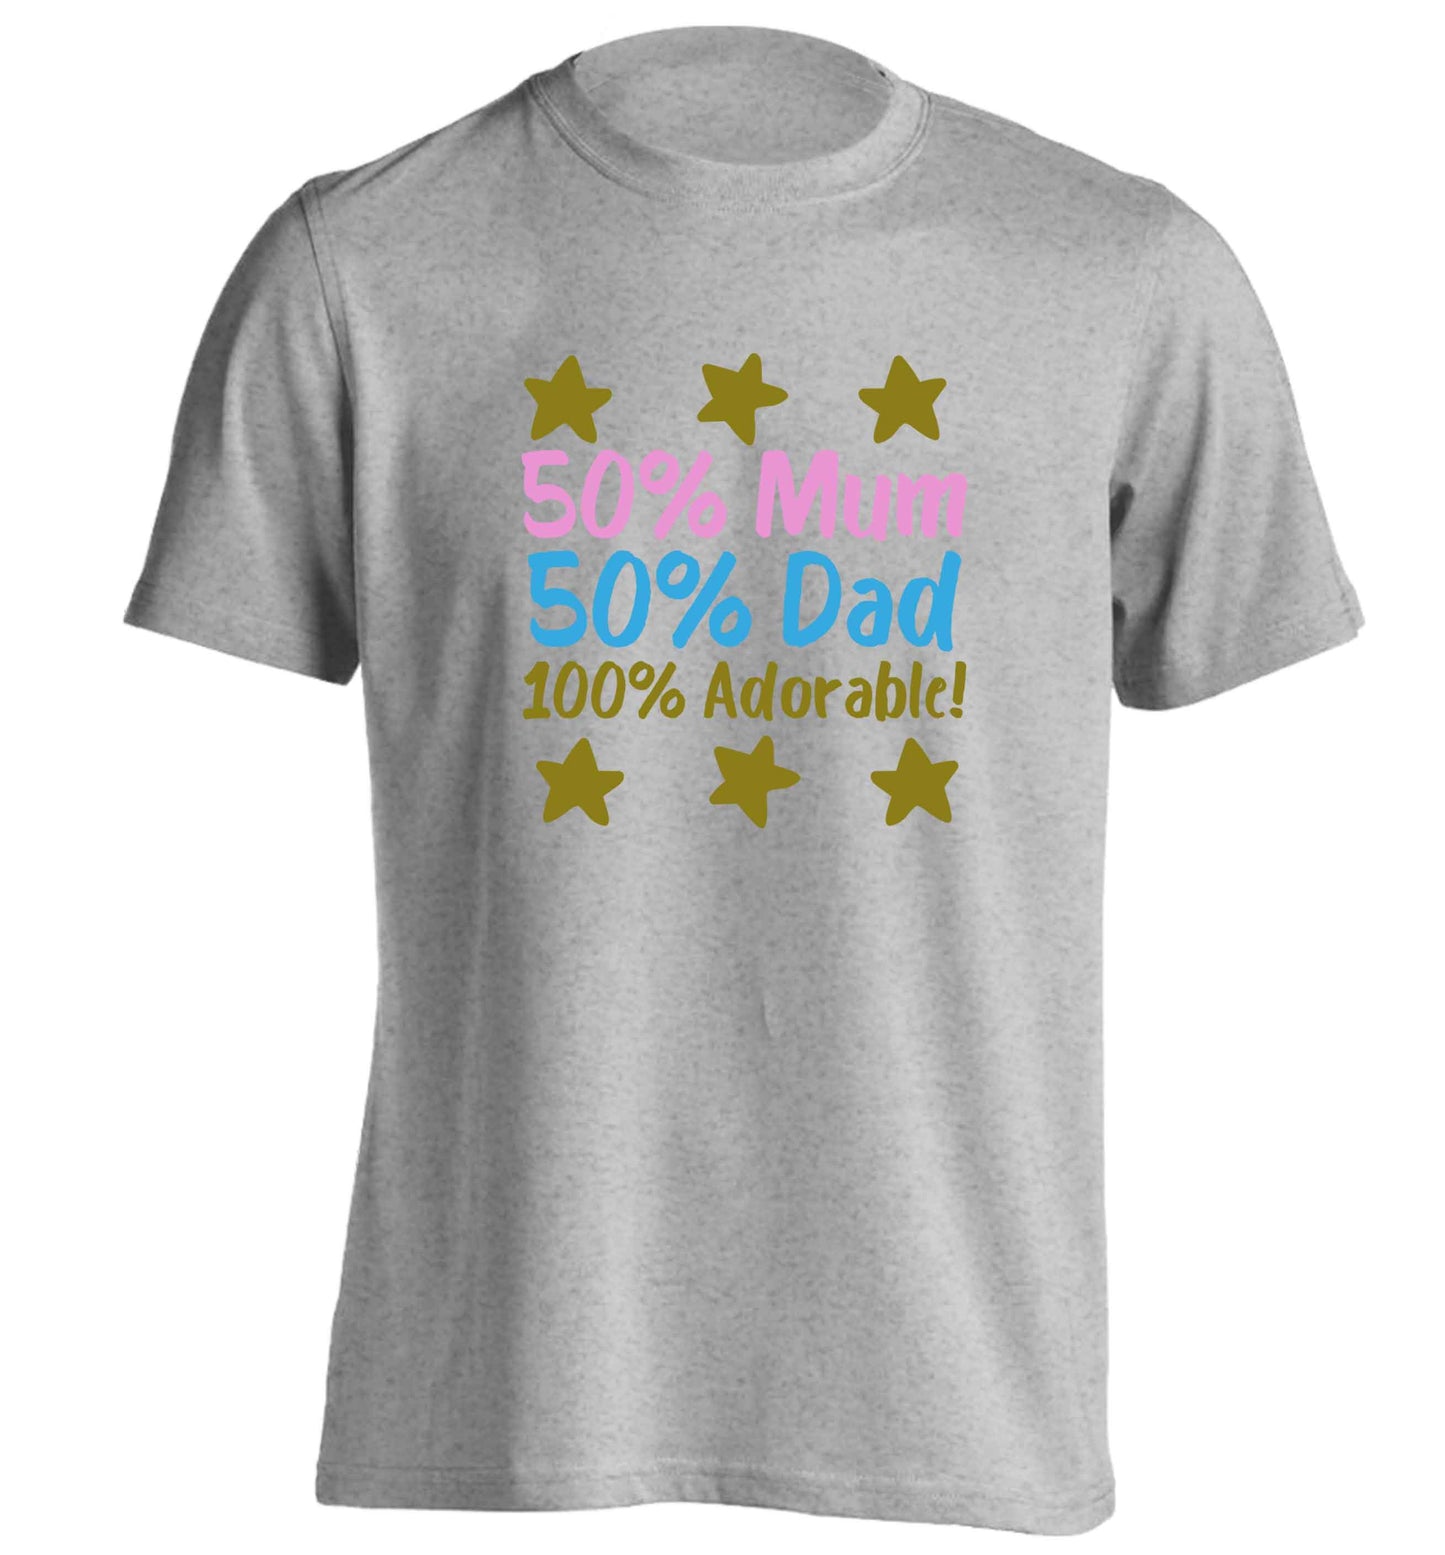 50% mum 50% dad 100% adorable adults unisex grey Tshirt 2XL